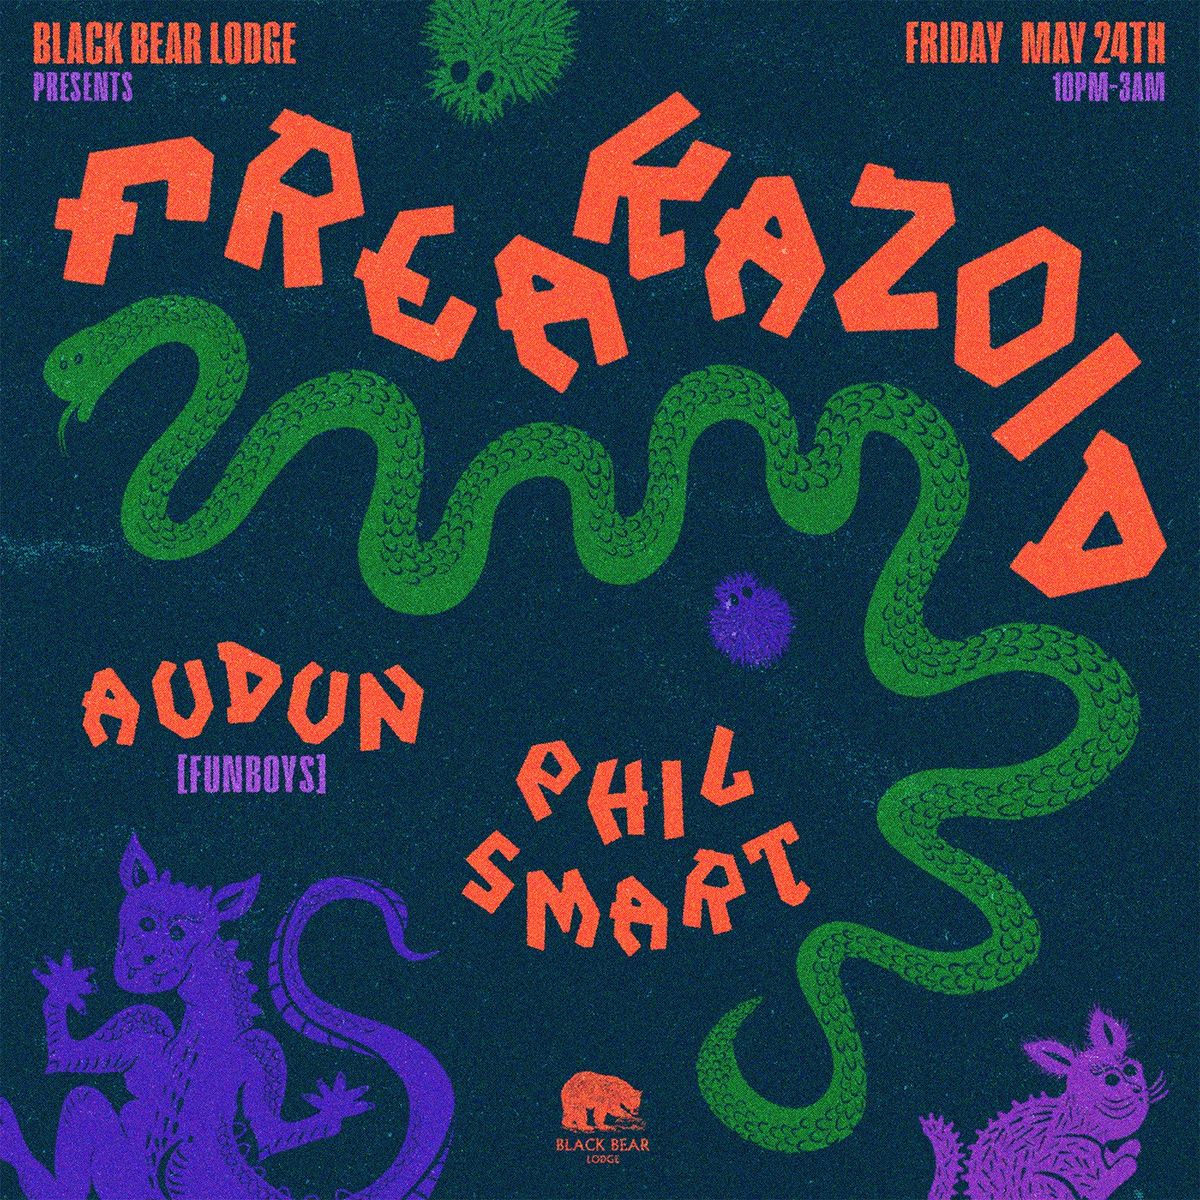 FREAKAZOID - Audun (Funboys) & Phil Smart 